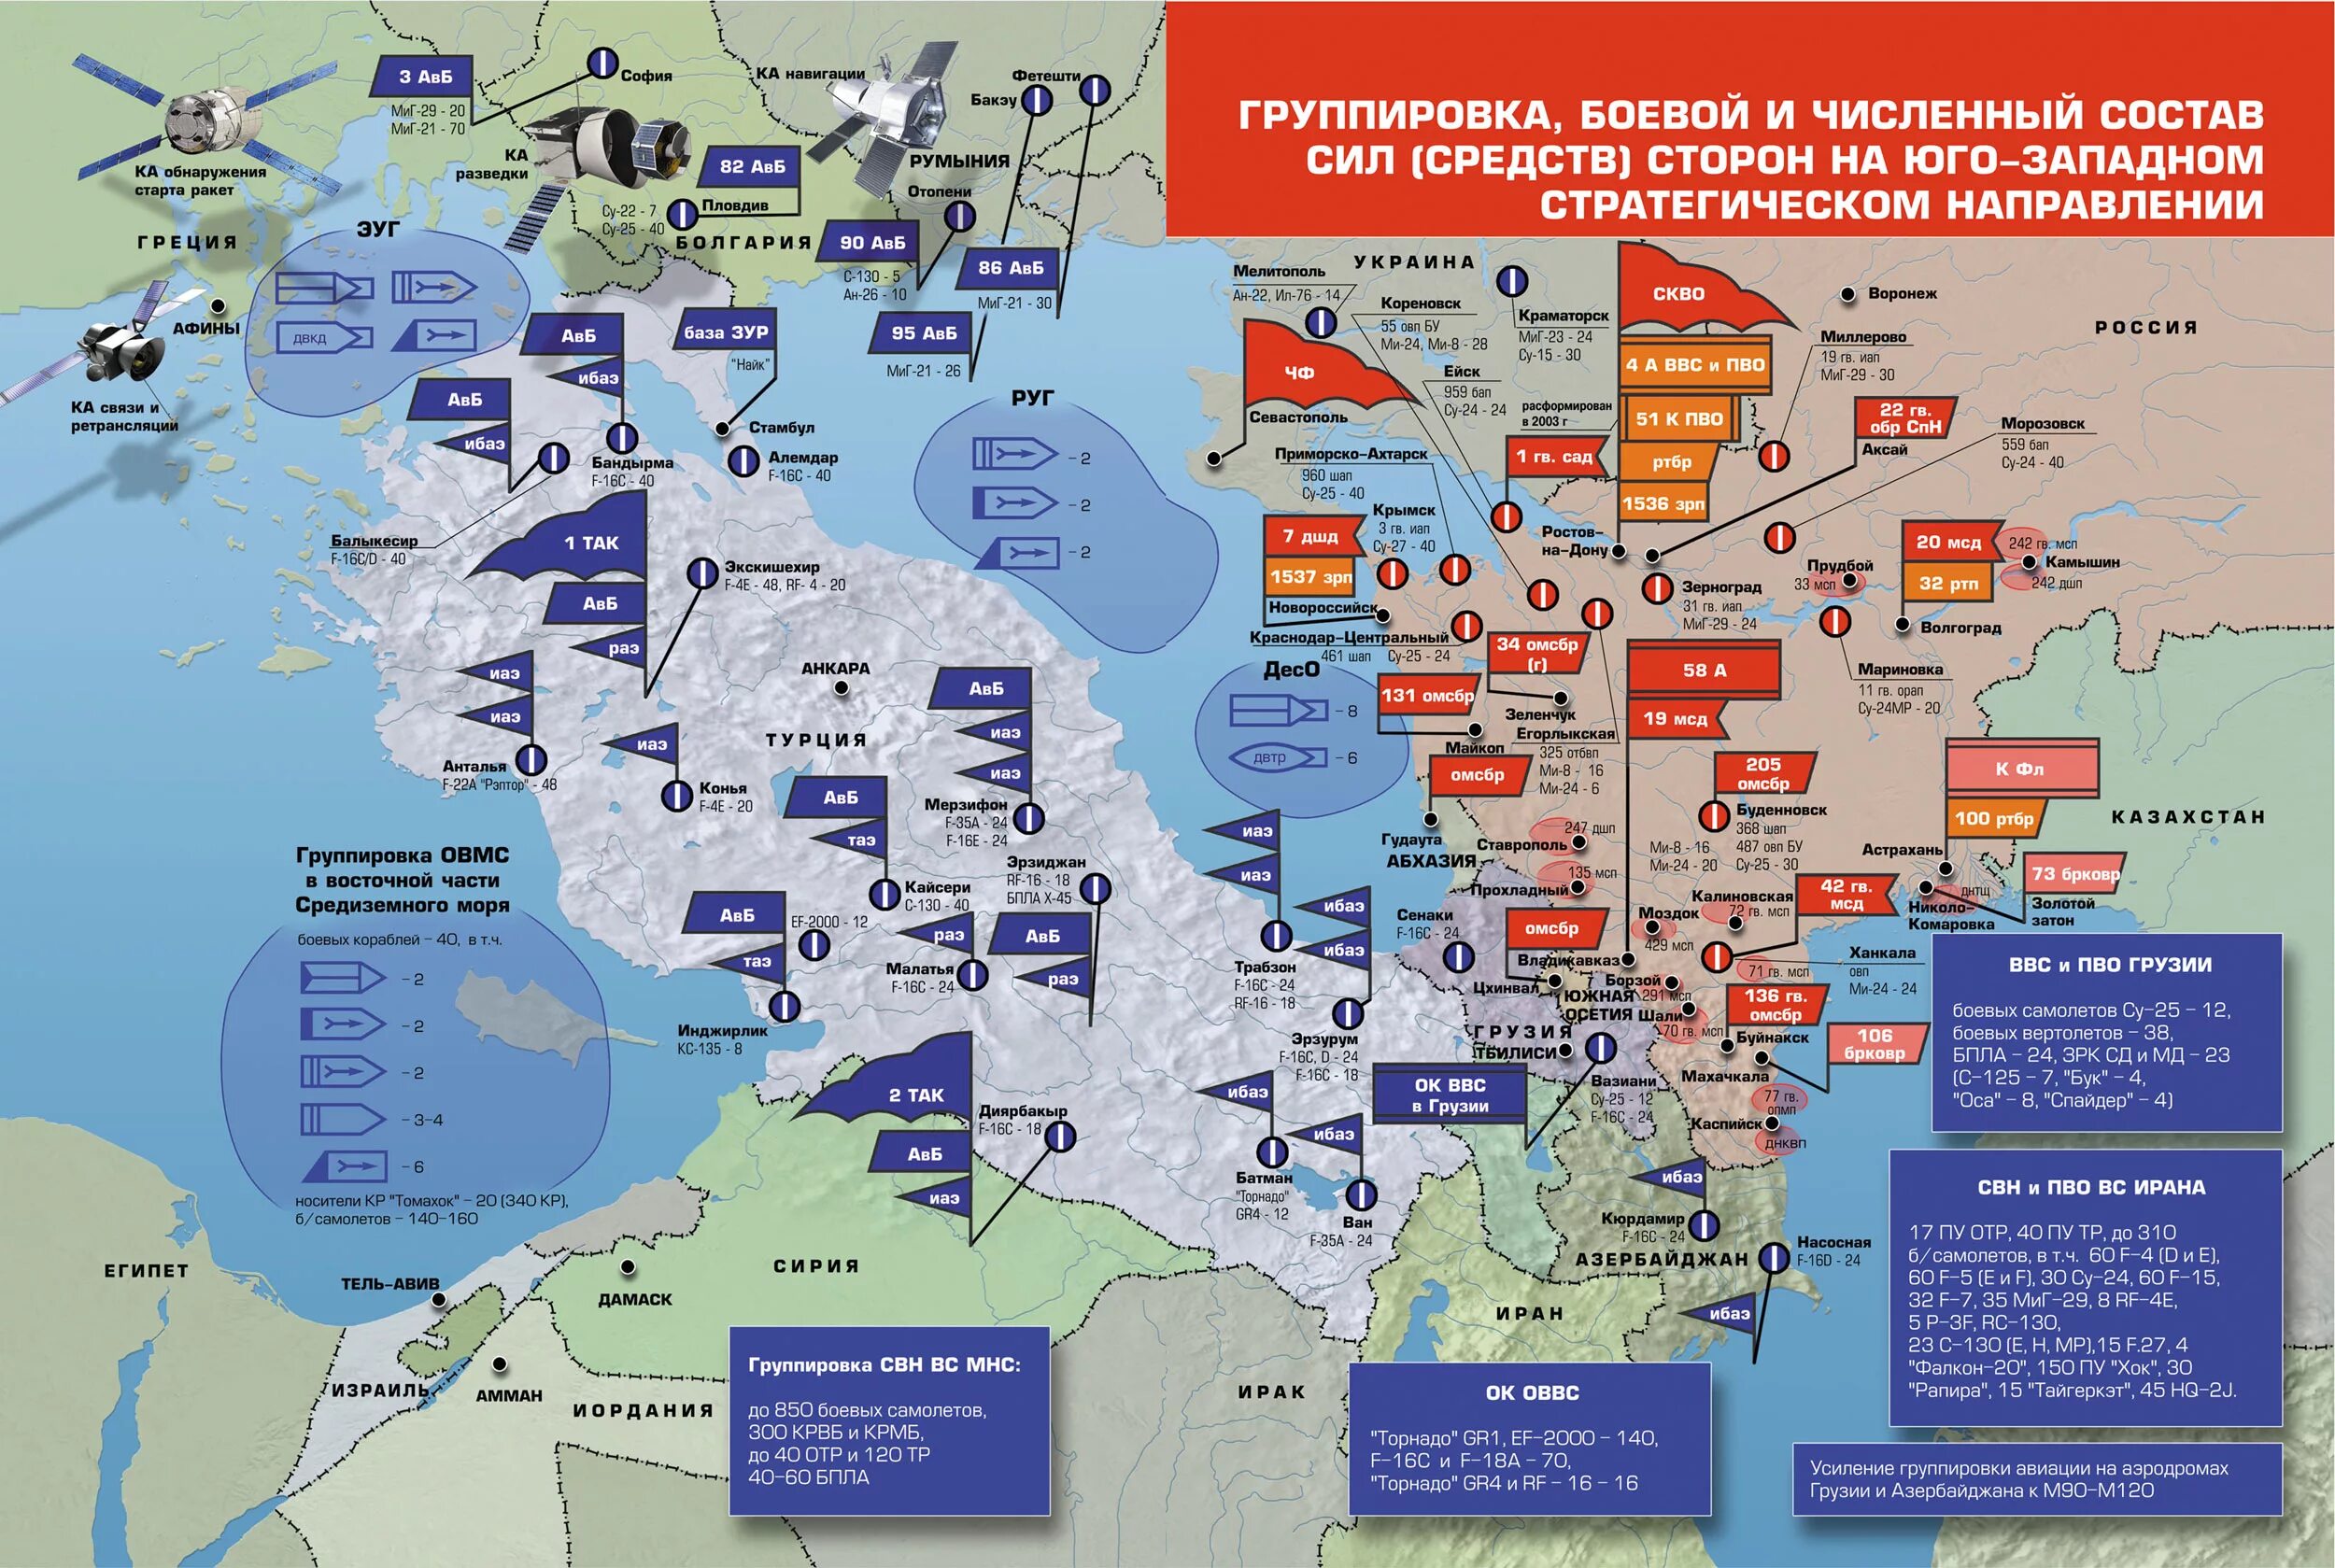 Нападения со стороны россии. ПВО НАТО В Европе на карте. Военные базы НАТО В Европе на карте. Карта размещения войск НАТО В Европе. Группировка войск НАТО на карте.